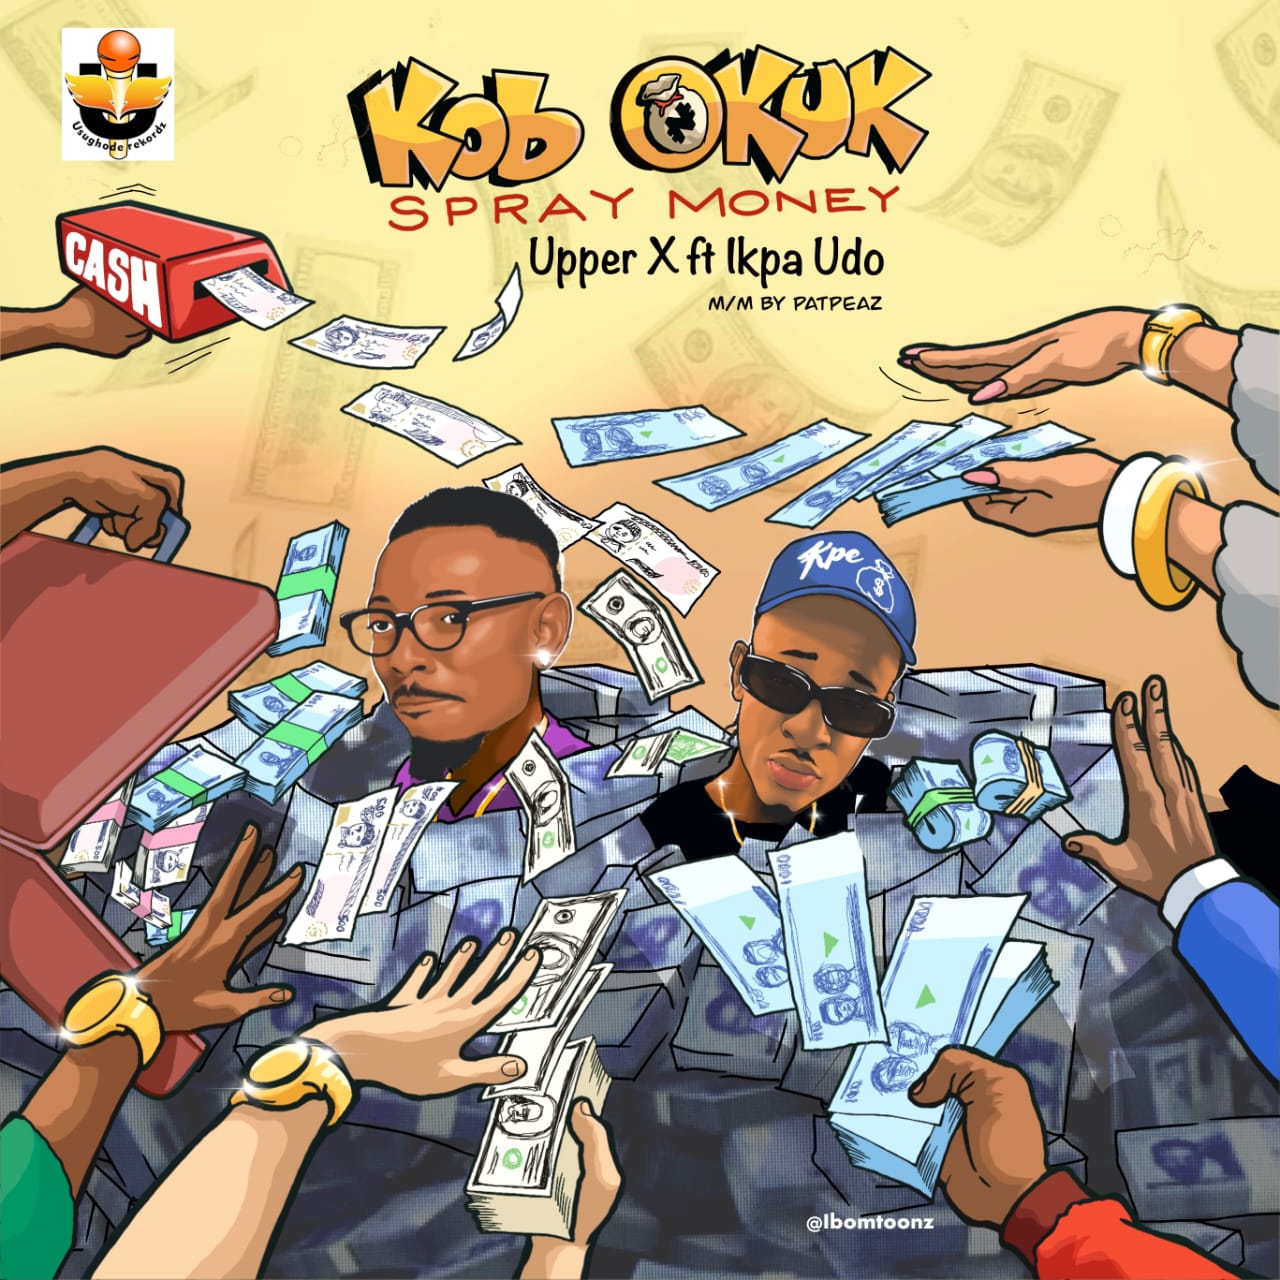 Upper X Ft Ikpa Udo – Kob Okuk (Spray Money)